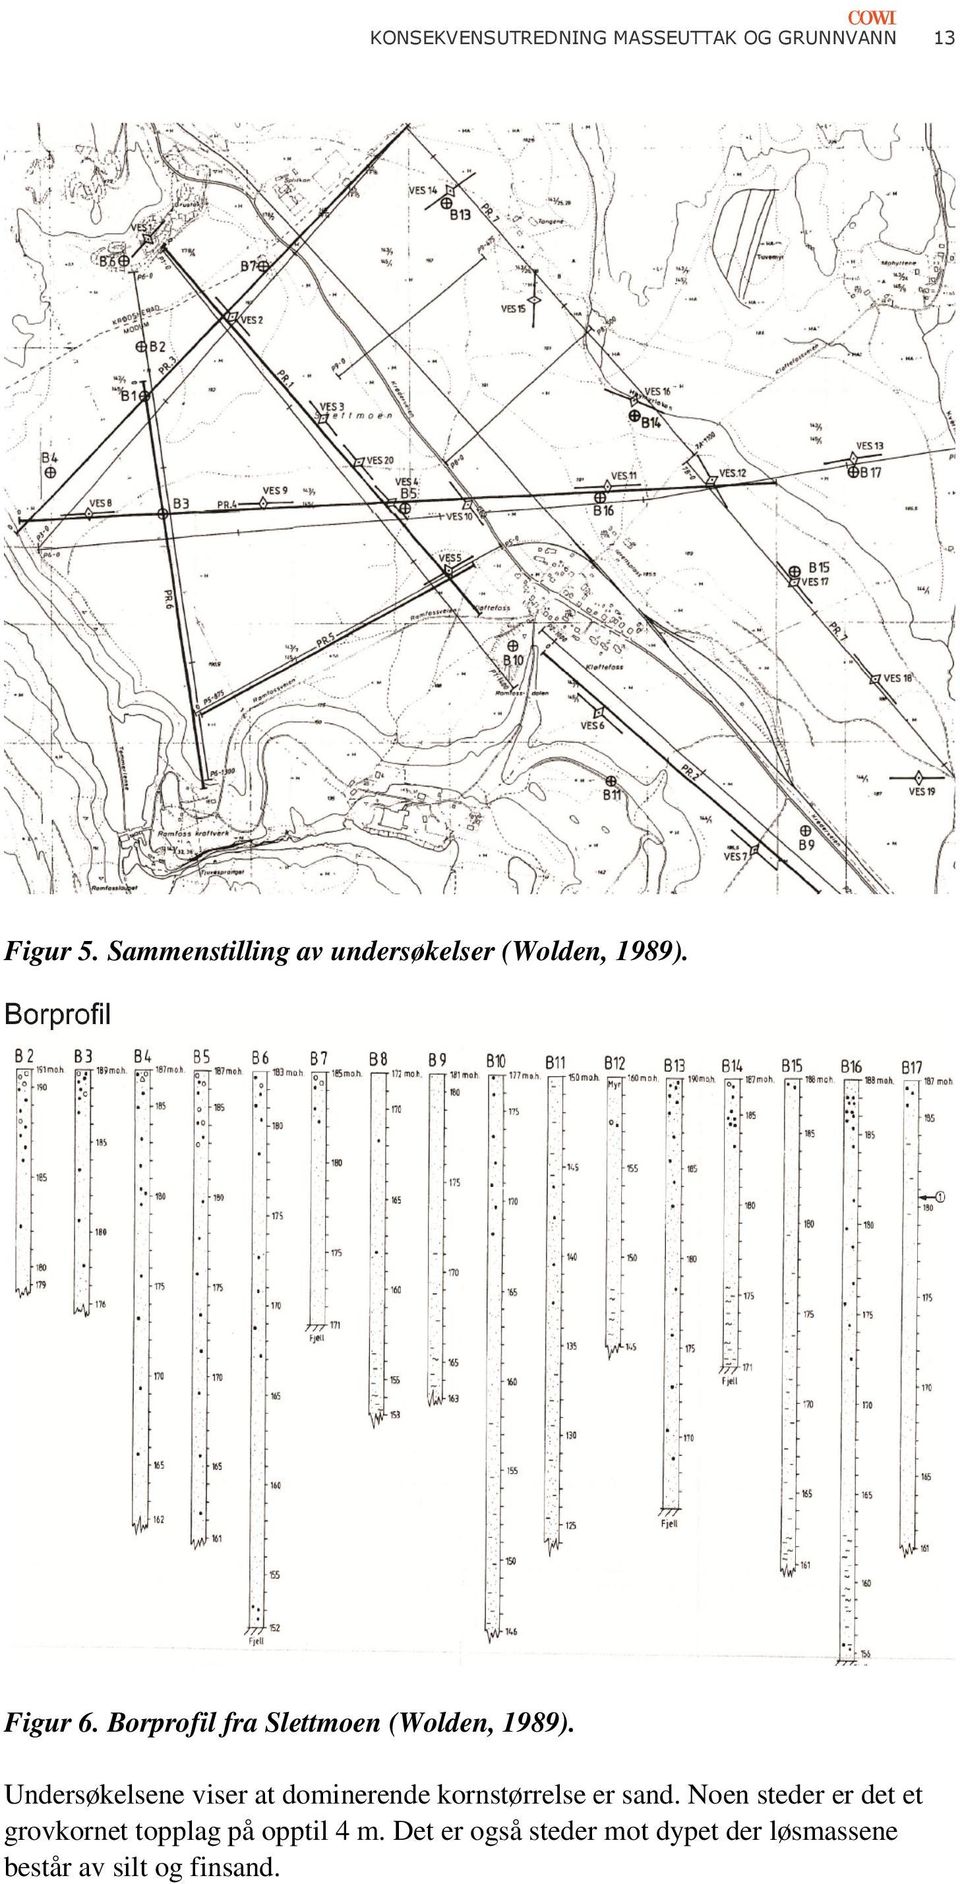 Borprofil fra Slettmoen (Wolden, 1989).